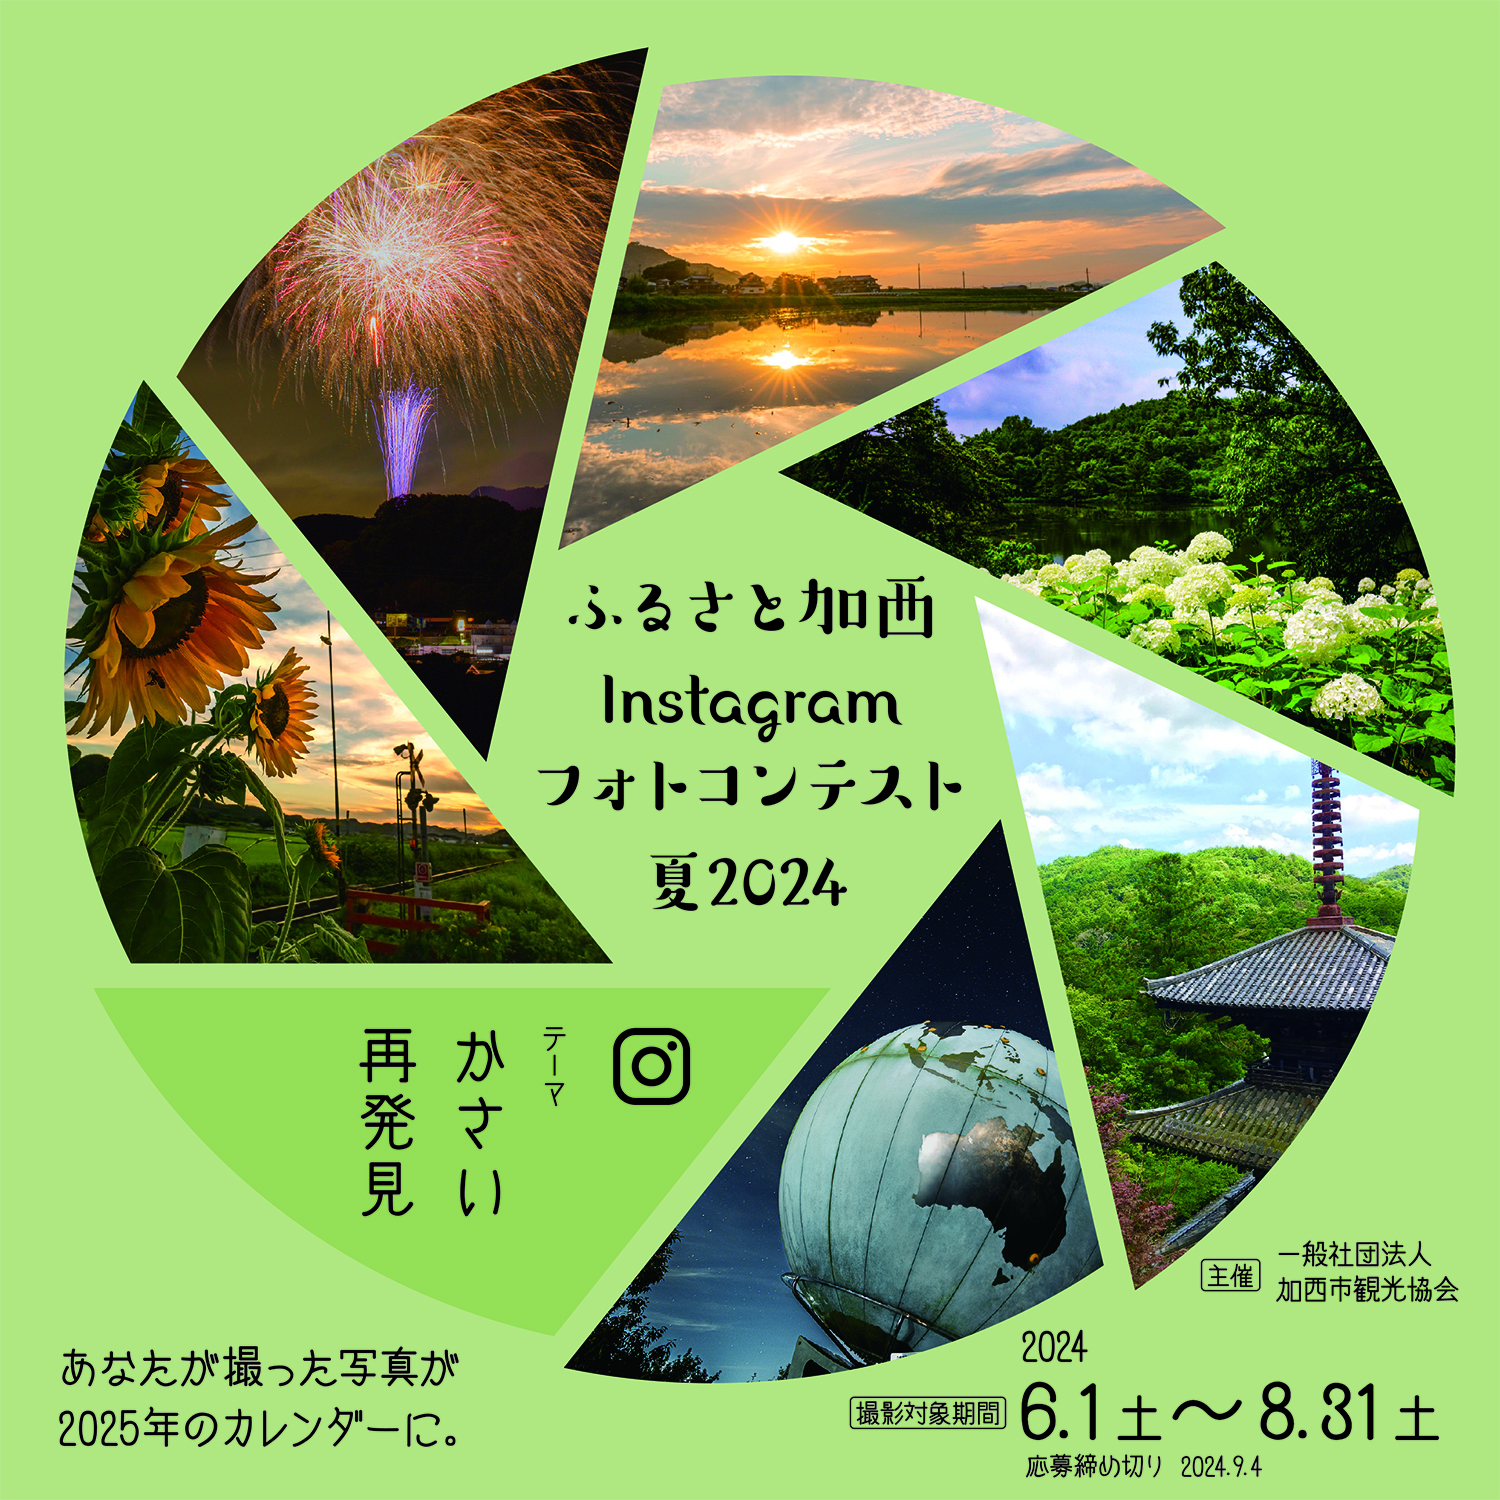 ふるさと加西Instagramフォトコンテスト夏2024